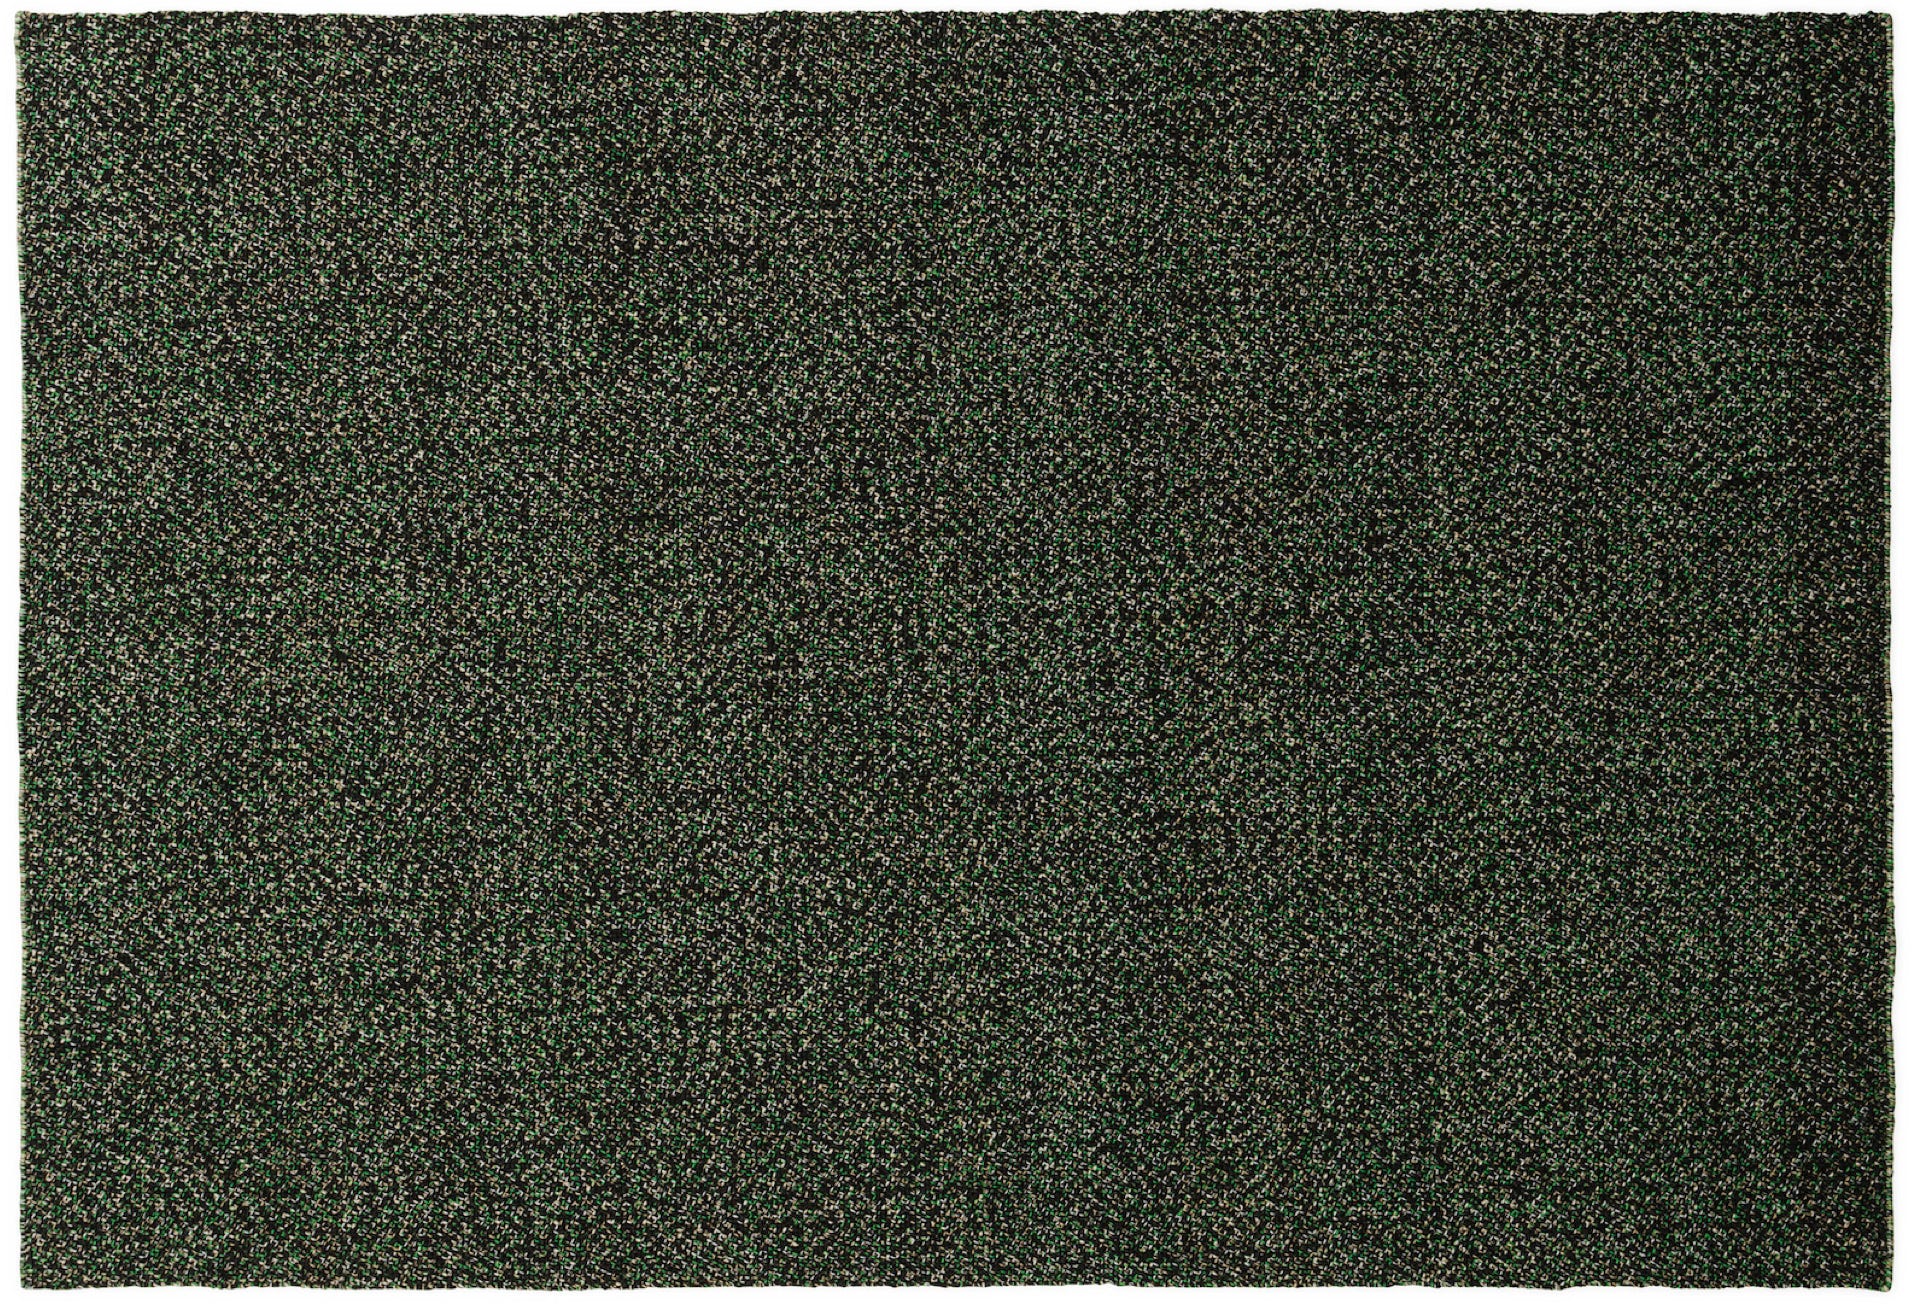 Polli rug  Recycled polyethylene  Simon Legald, 2021